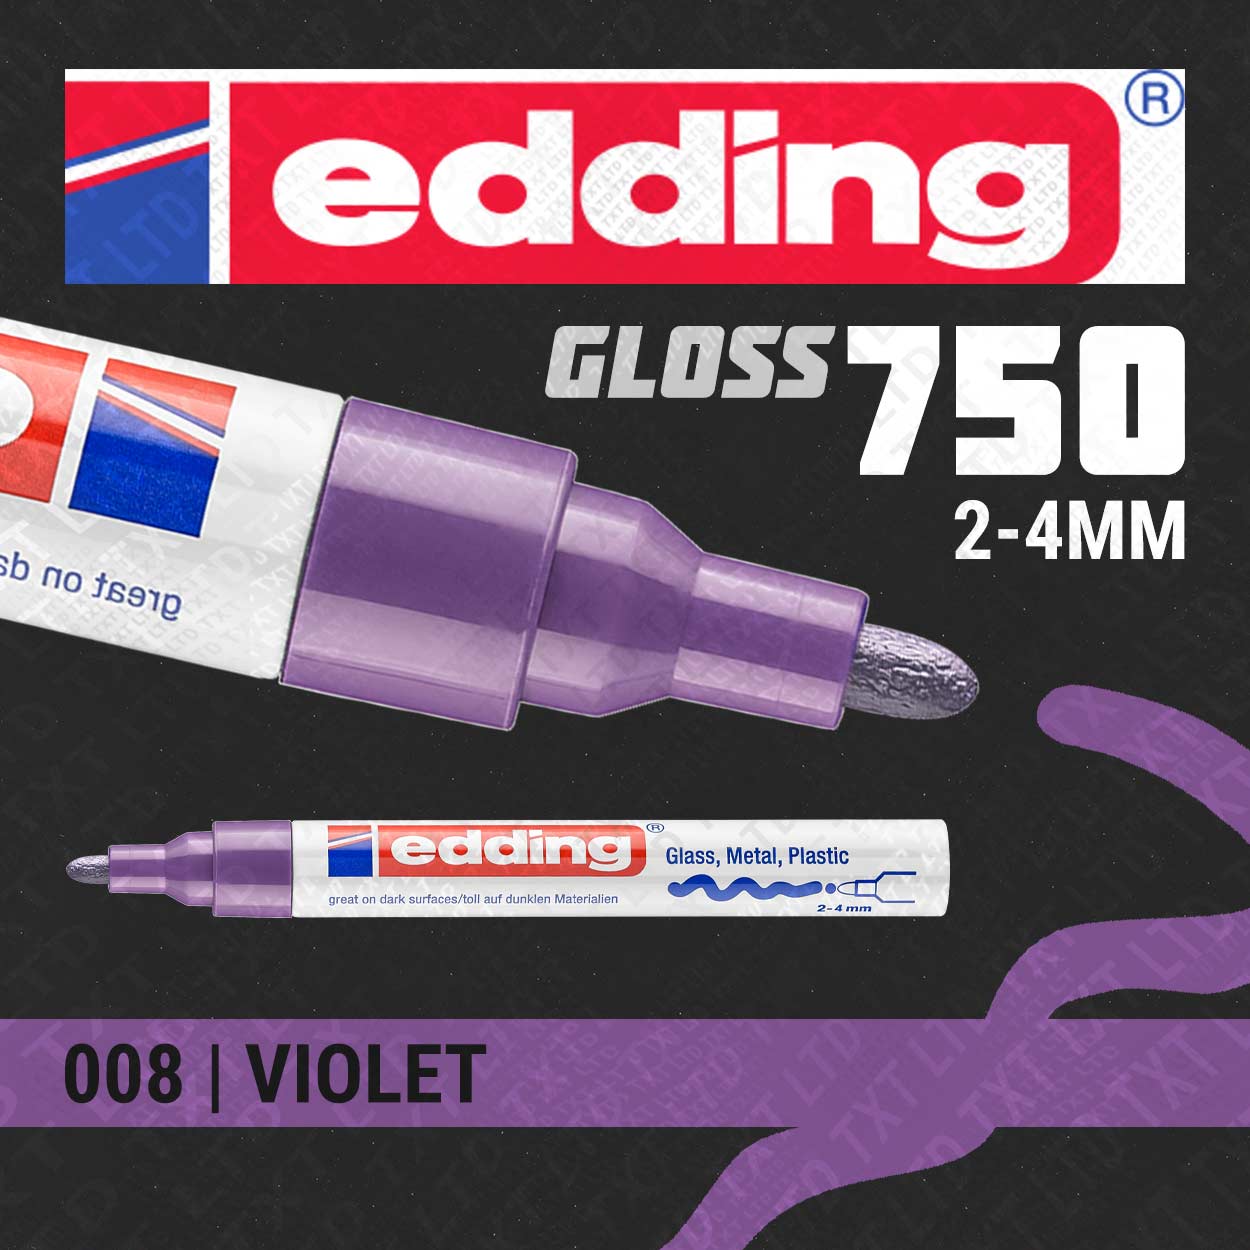 edding 750 Gloss Paint Marker